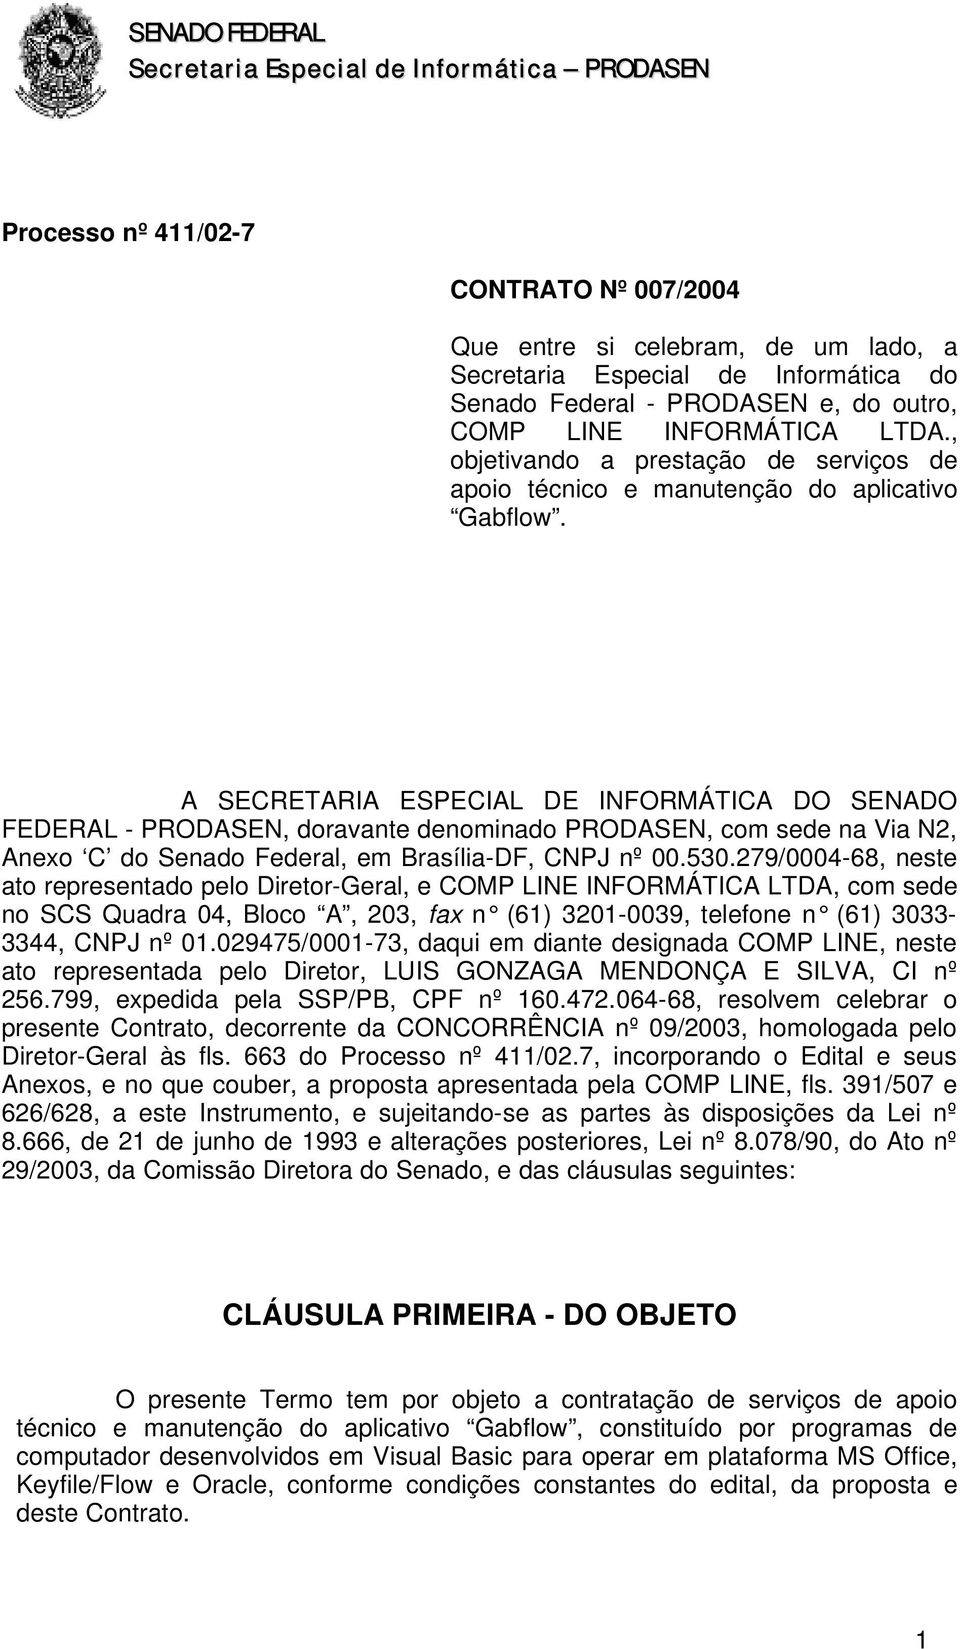 A SECRETARIA ESPECIAL DE INFORMÁTICA DO SENADO FEDERAL - PRODASEN, doravante denominado PRODASEN, com sede na Via N2, Anexo C do Senado Federal, em Brasília-DF, CNPJ nº 00.530.